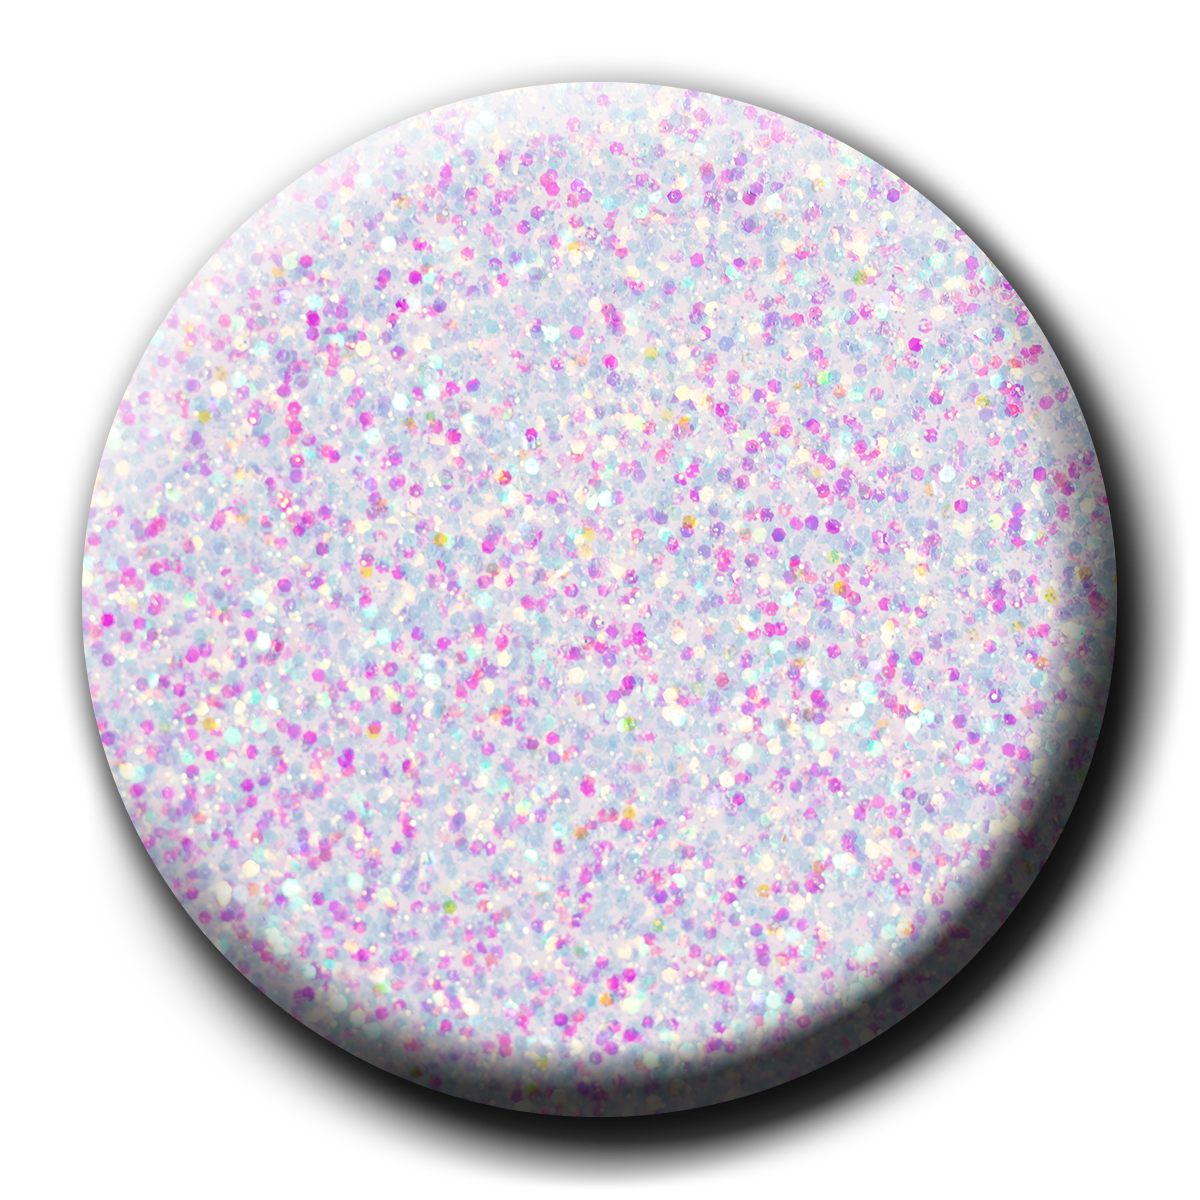 Sinfully Sweet UV/LED Glitter Gel, 17 ml